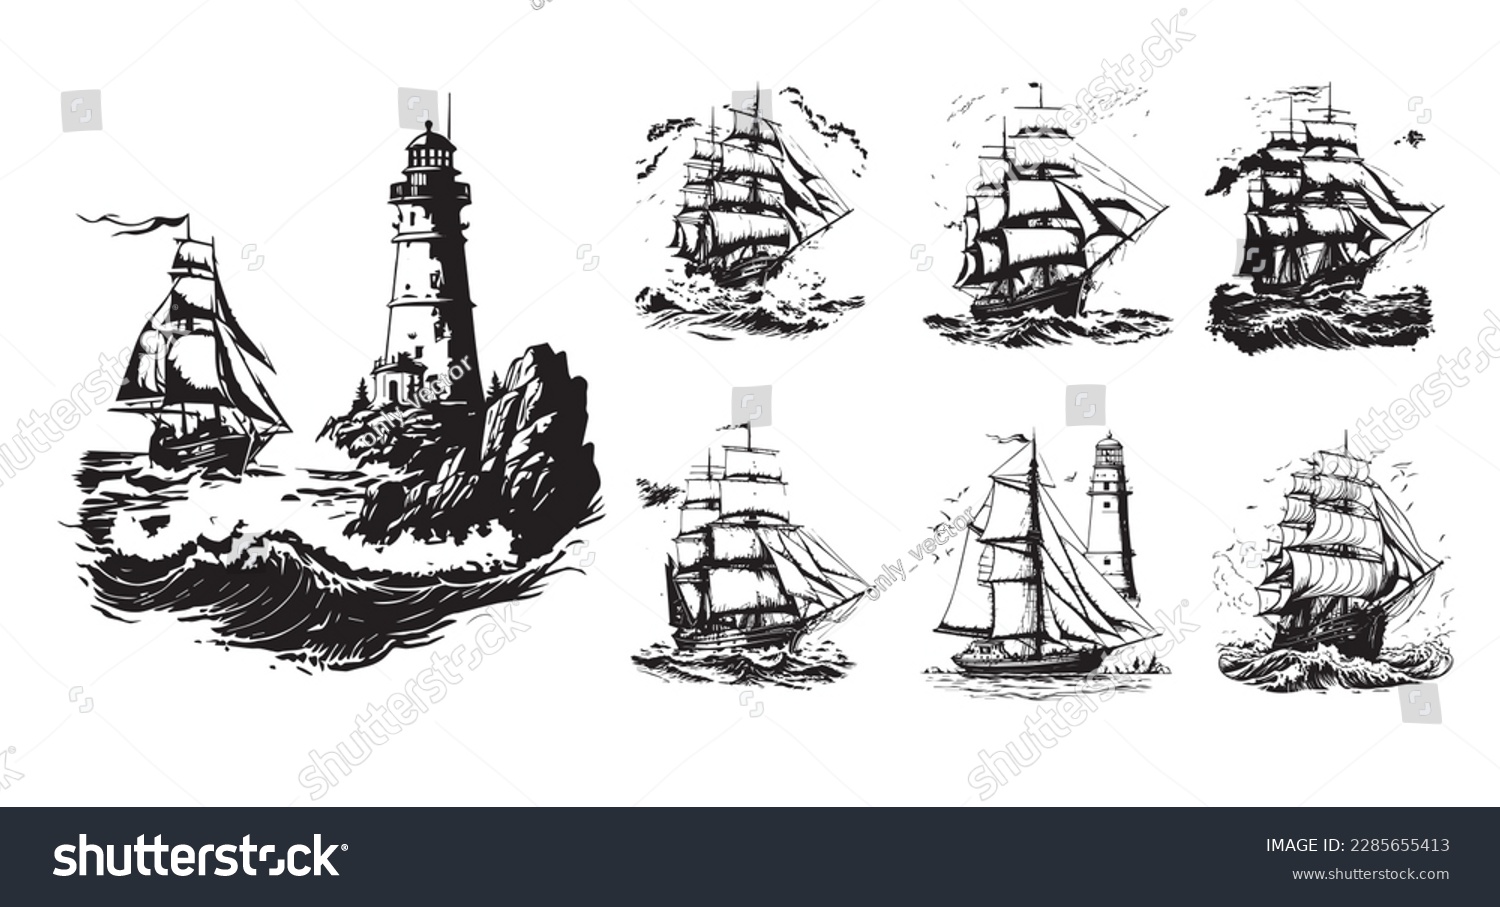 SVG of Boat, ship, sailboat vector illustration on a white background. Vector illustration silhouette svg. svg